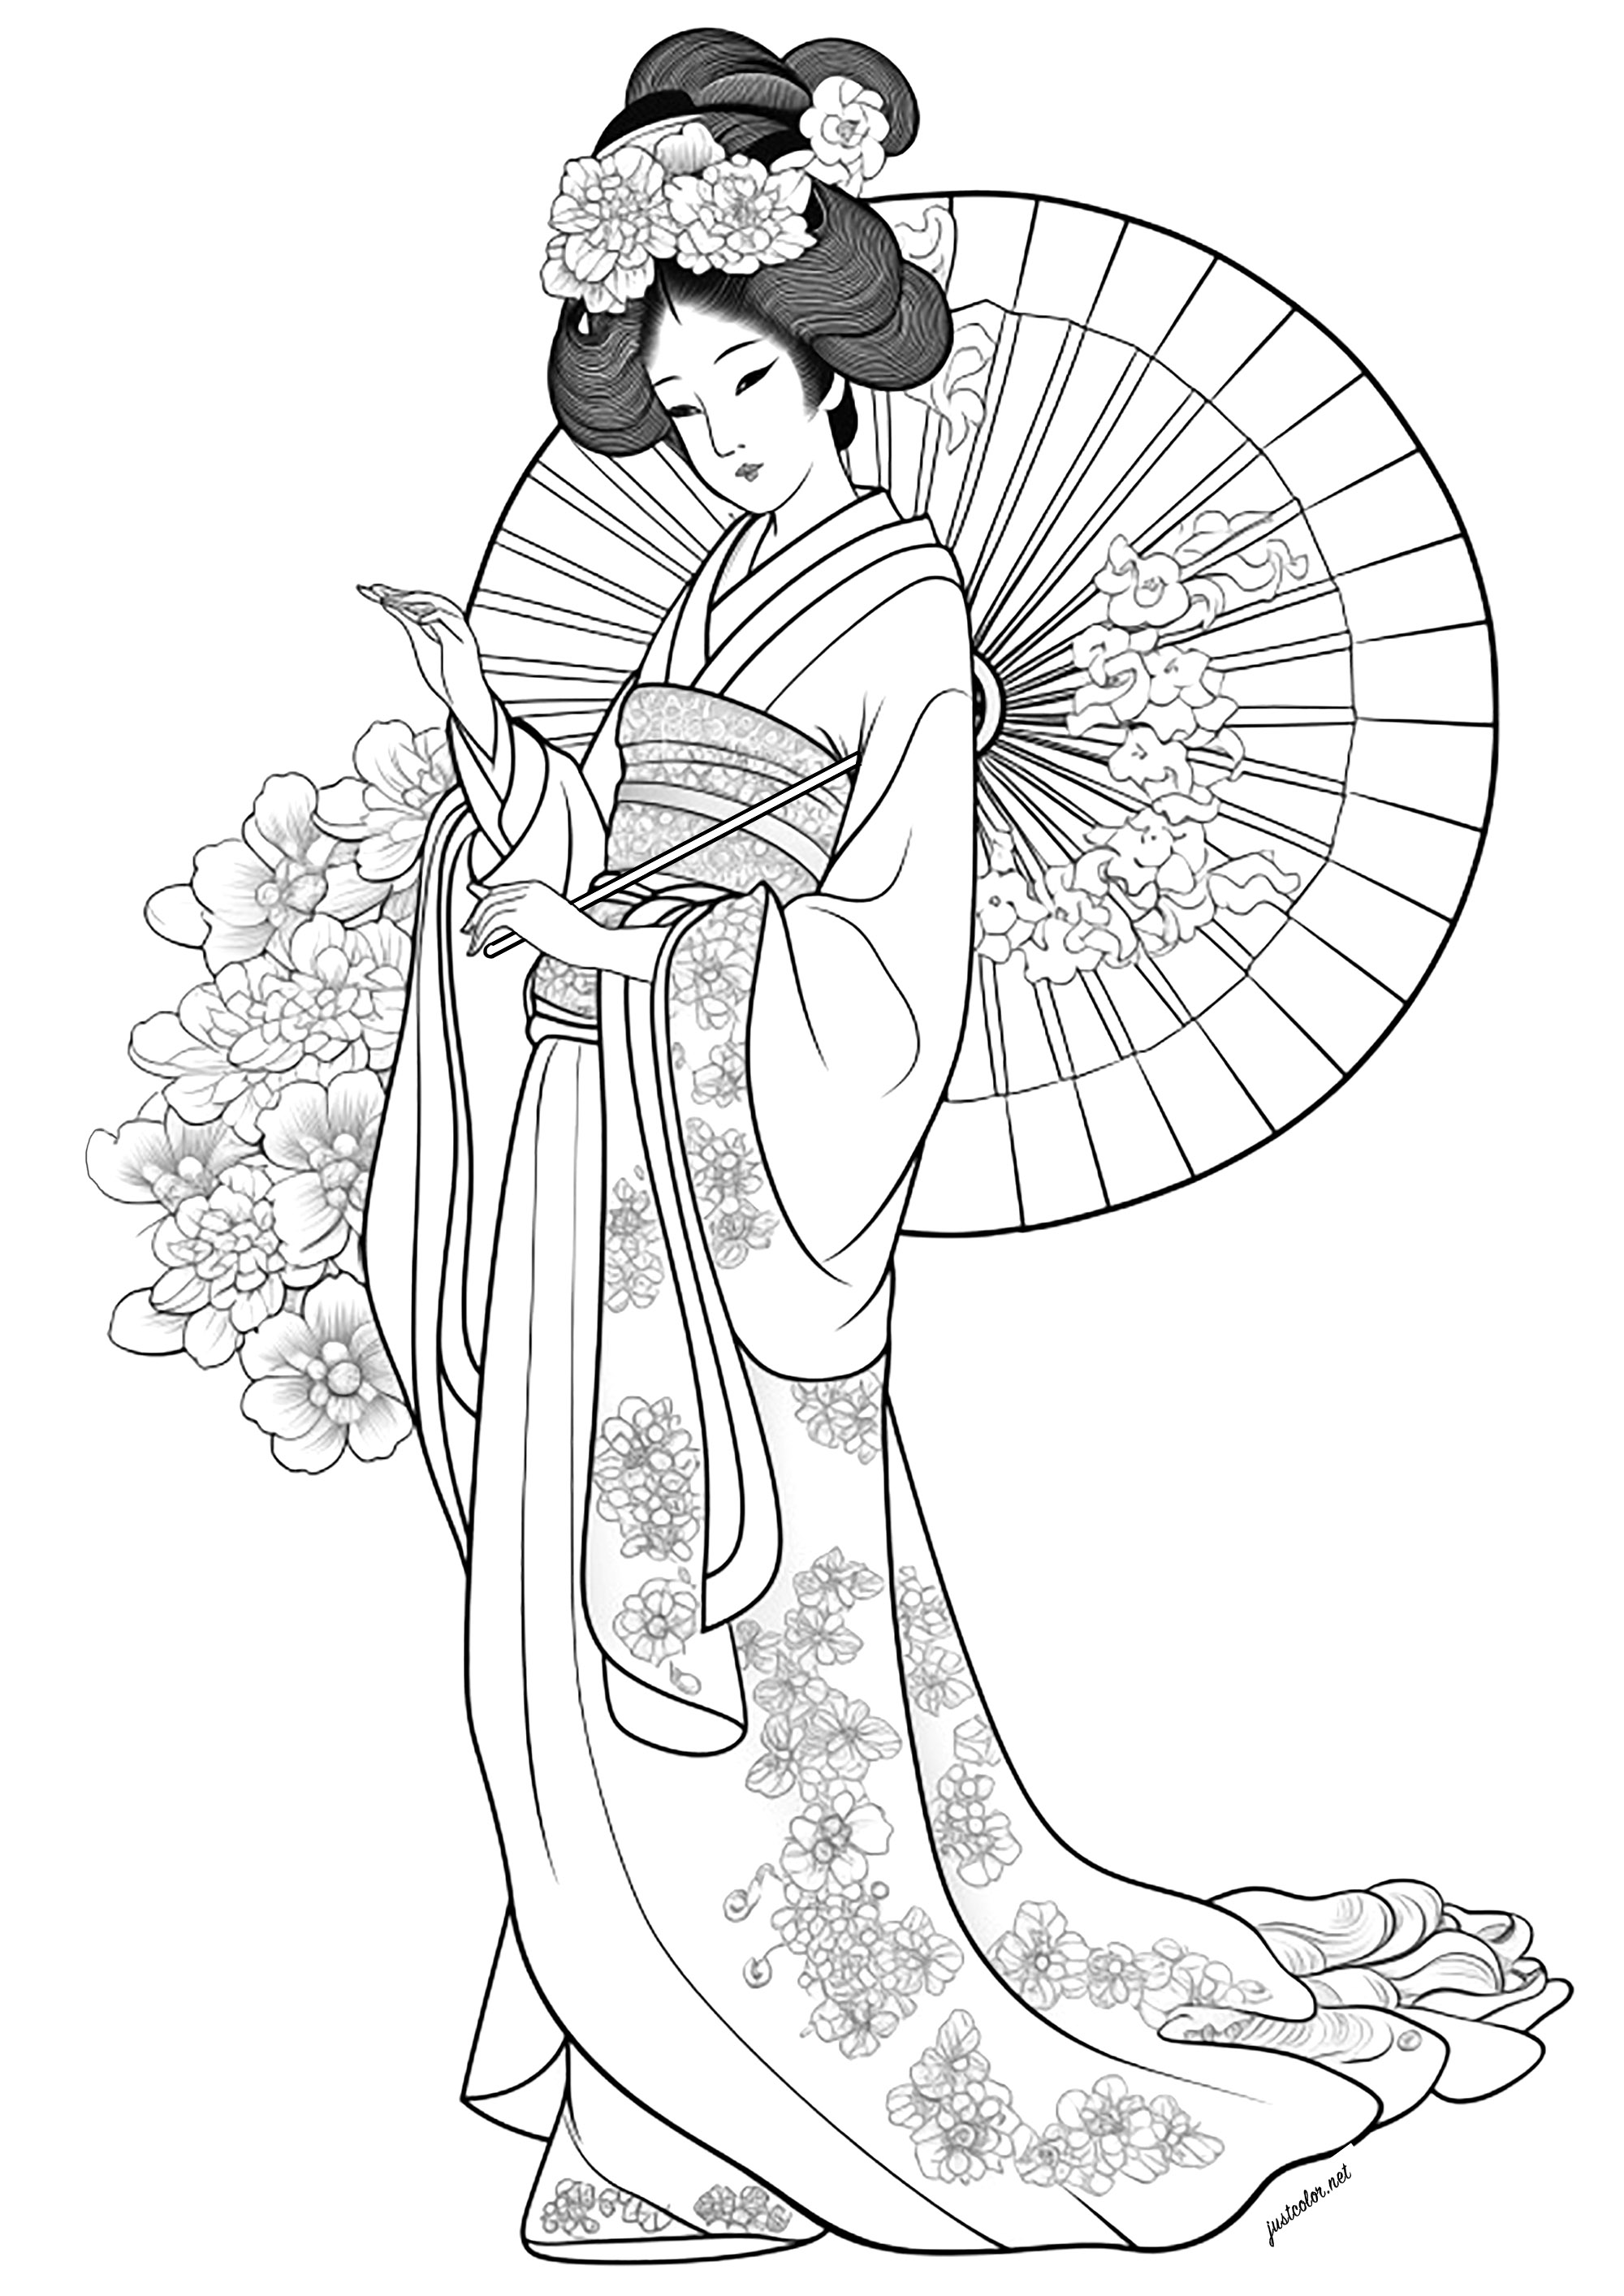 Hermosa geisha y abanico, con flores en su vestido y alrededor